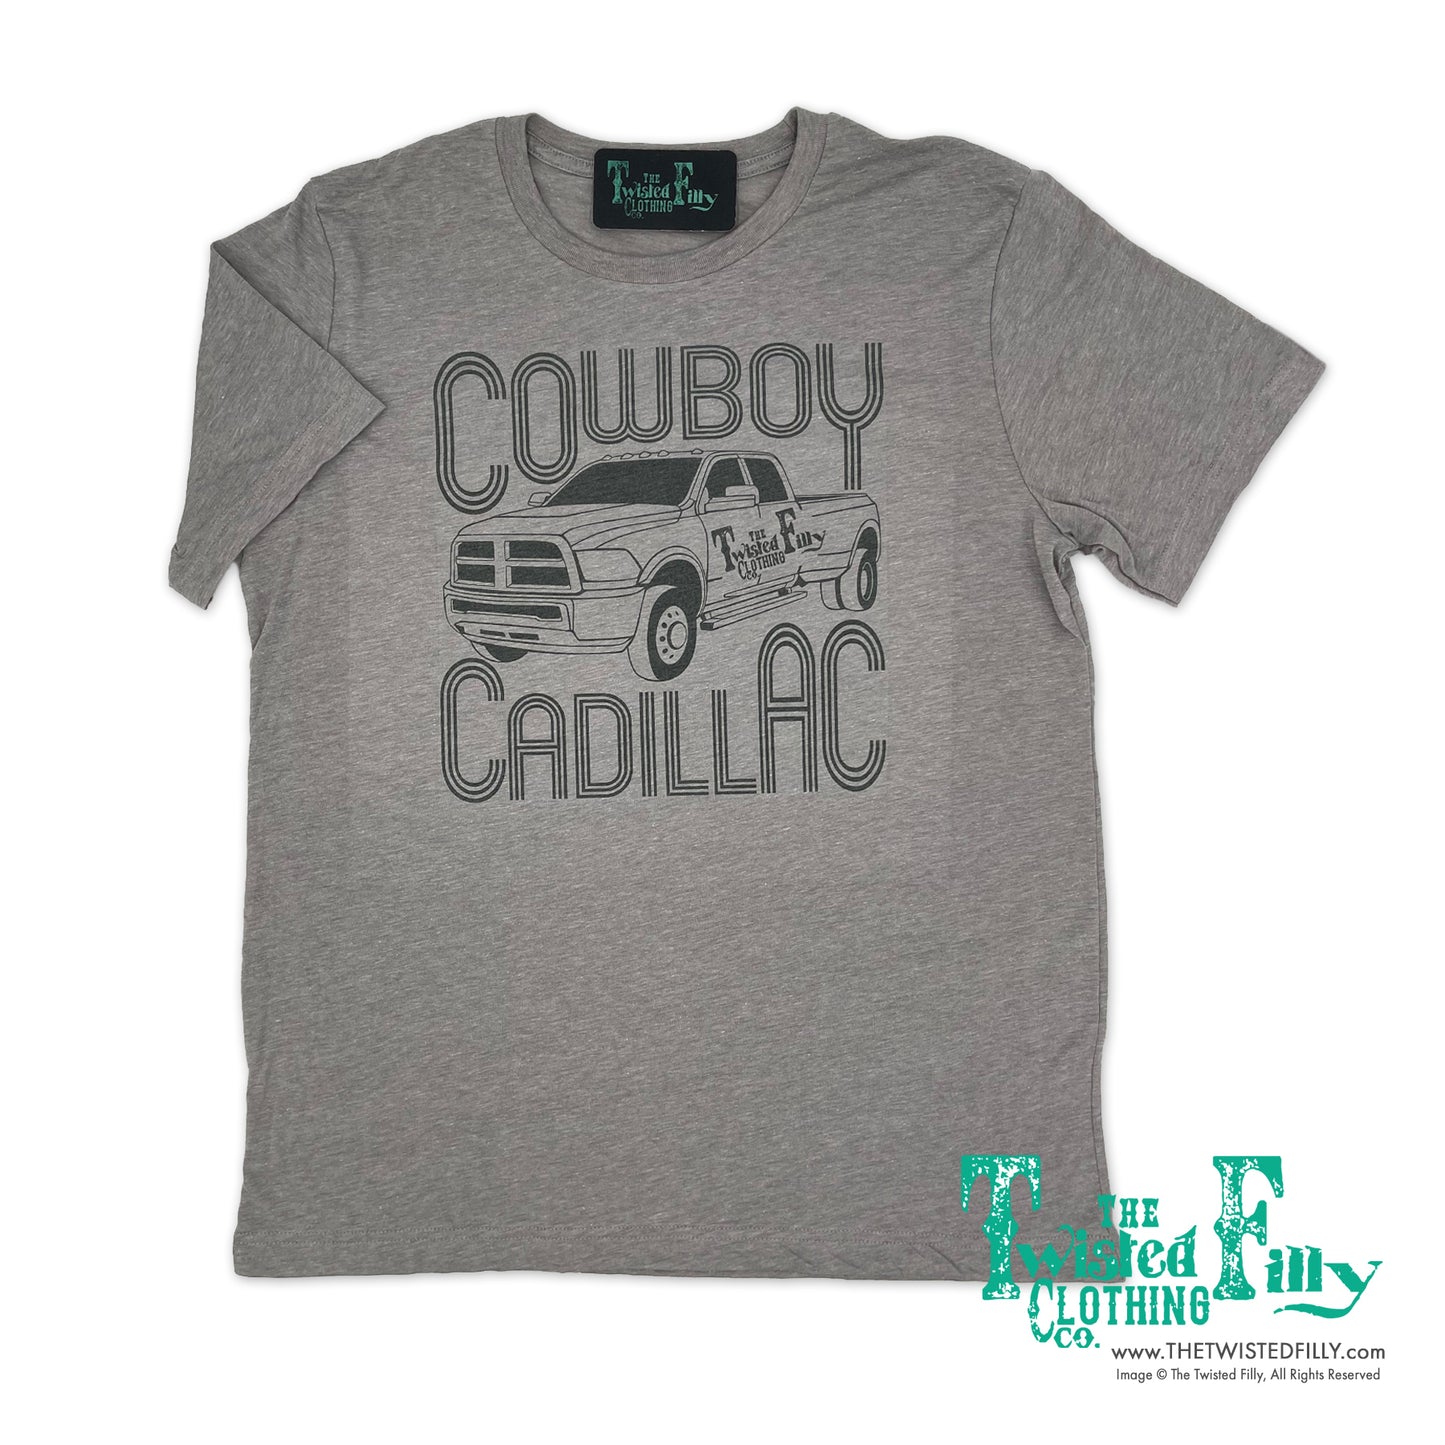 Cowboy Cadillac - S/S Toddler Tee - Gray